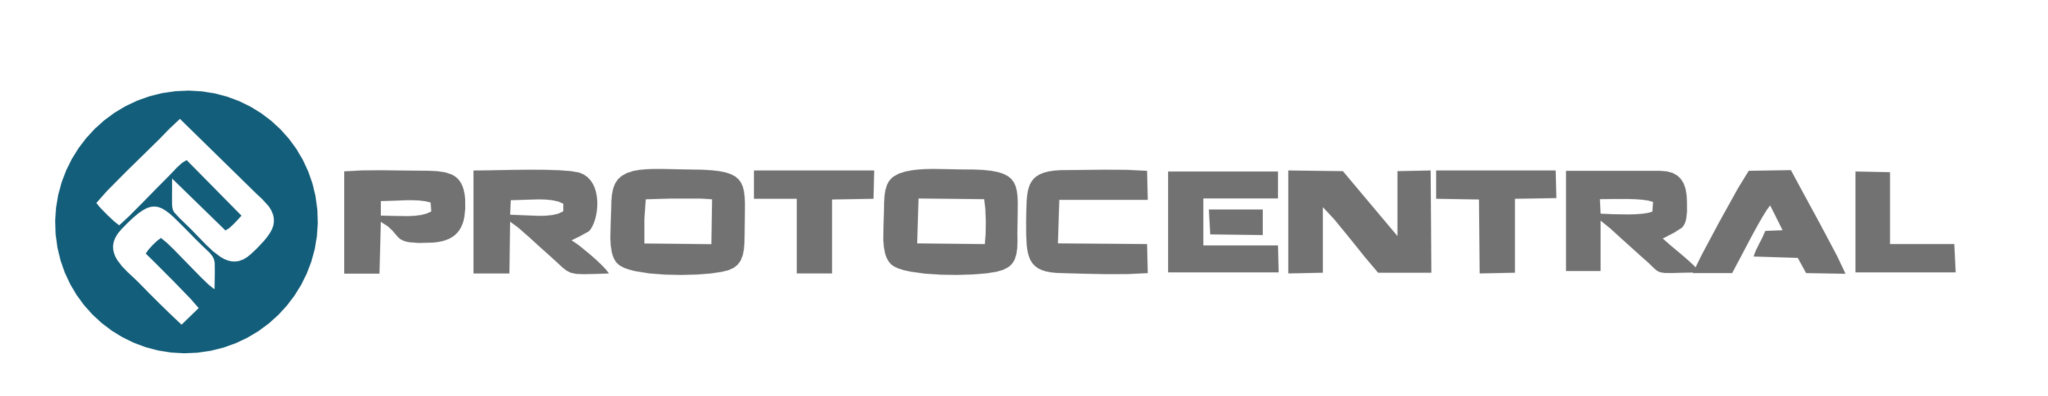 Protocentral logo